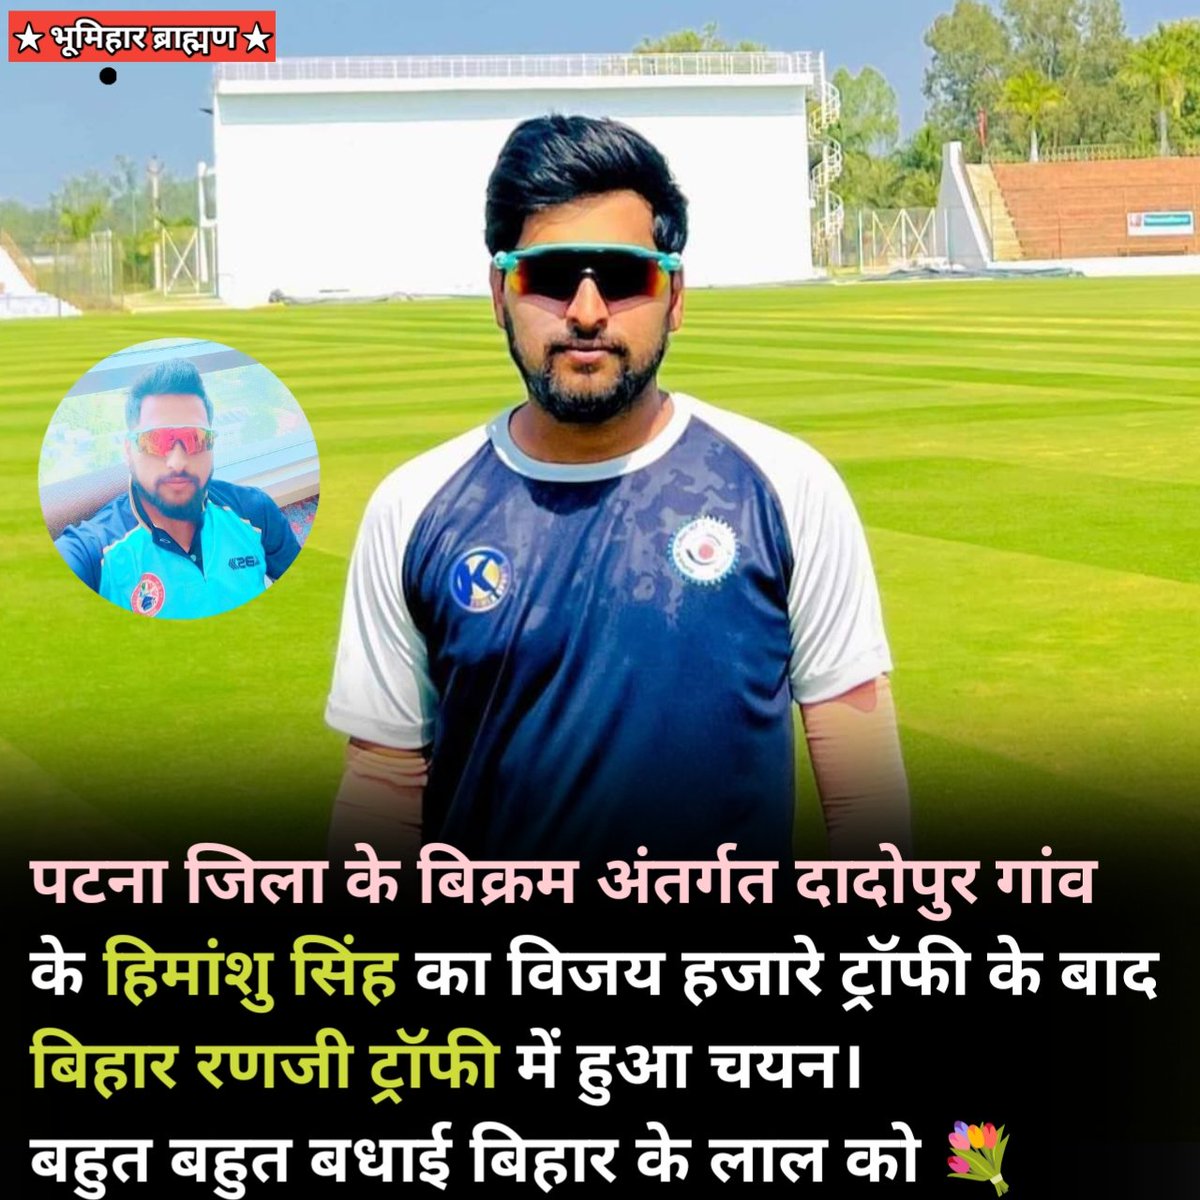 पटना जिला के बिक्रम अंतर्गत दादोपुर गांव के हिमांशु सिंह का विजय हजारे ट्रॉफी के बाद  बिहार रणजी ट्रॉफी में हुआ चयन।
बहुत बहुत बधाई बिहार के लाल को 💐

#bihar #vijayhajaretrophy #biharranjiteam #cricket #indiancricket #himanshusingh #bhumiharpride